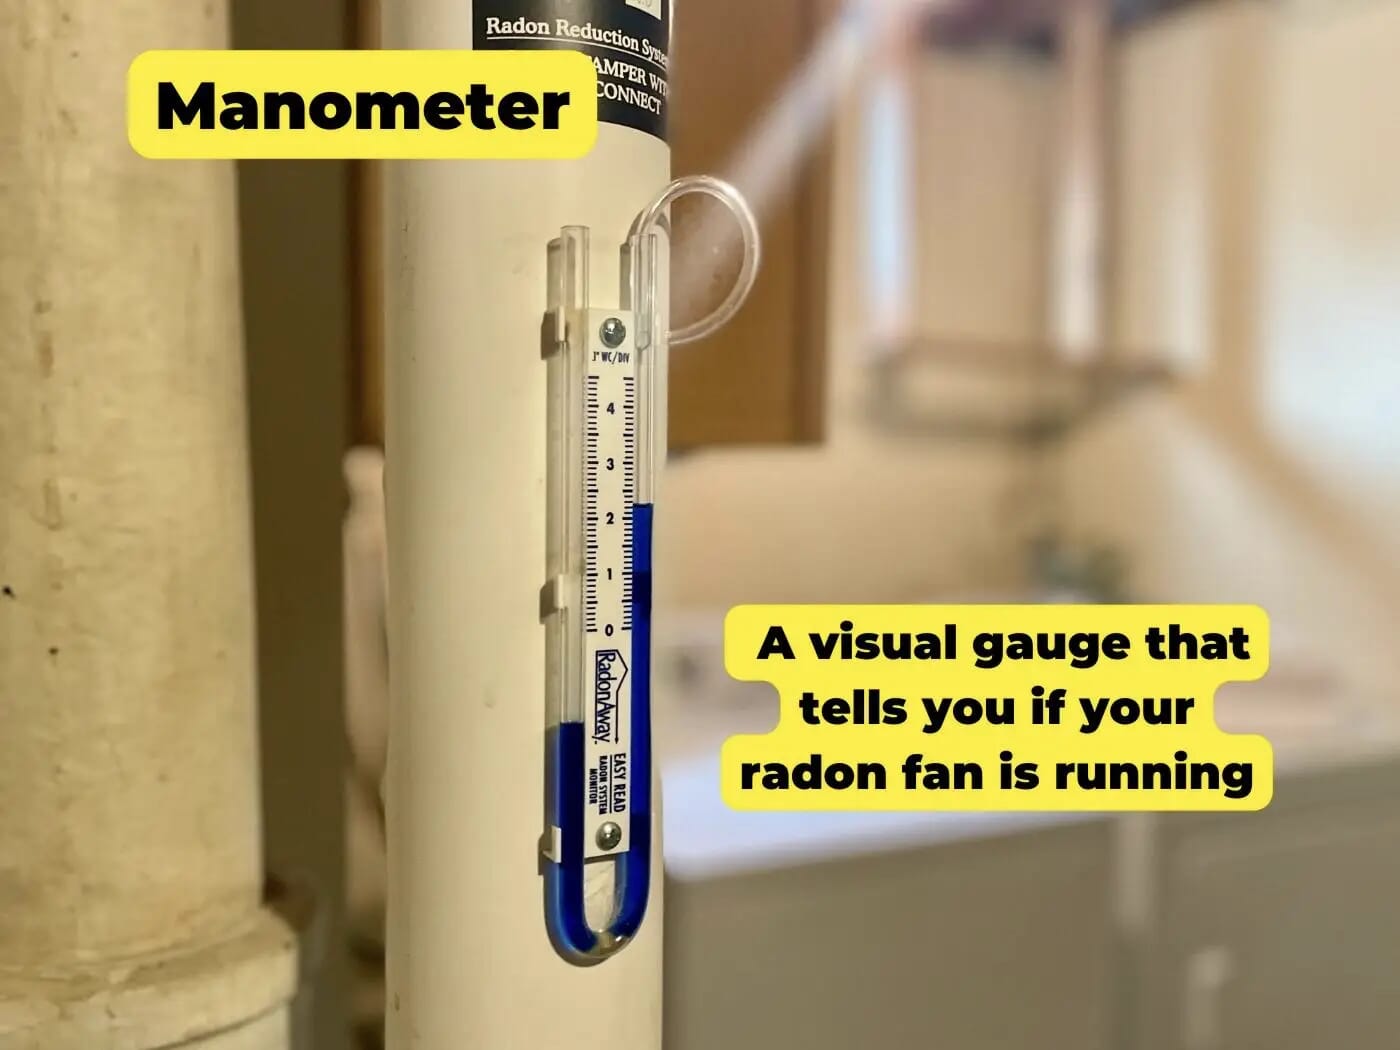 Manometer for Radon